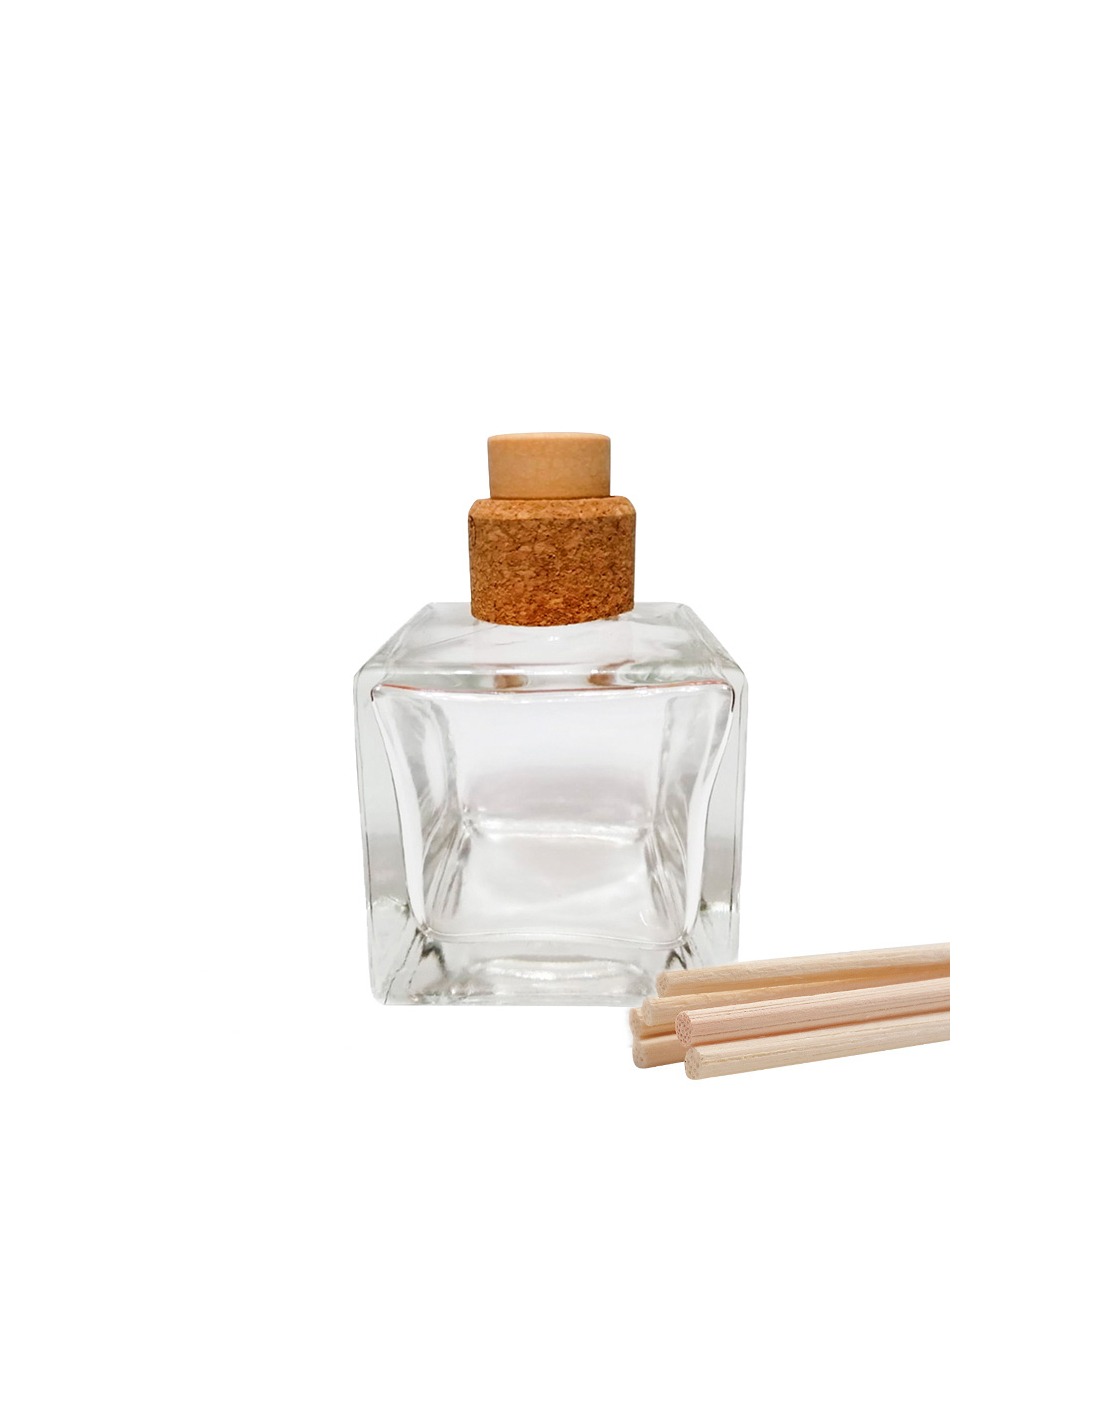 Vaporisateur parfum ambiance senteur miel épices huiles essentielle